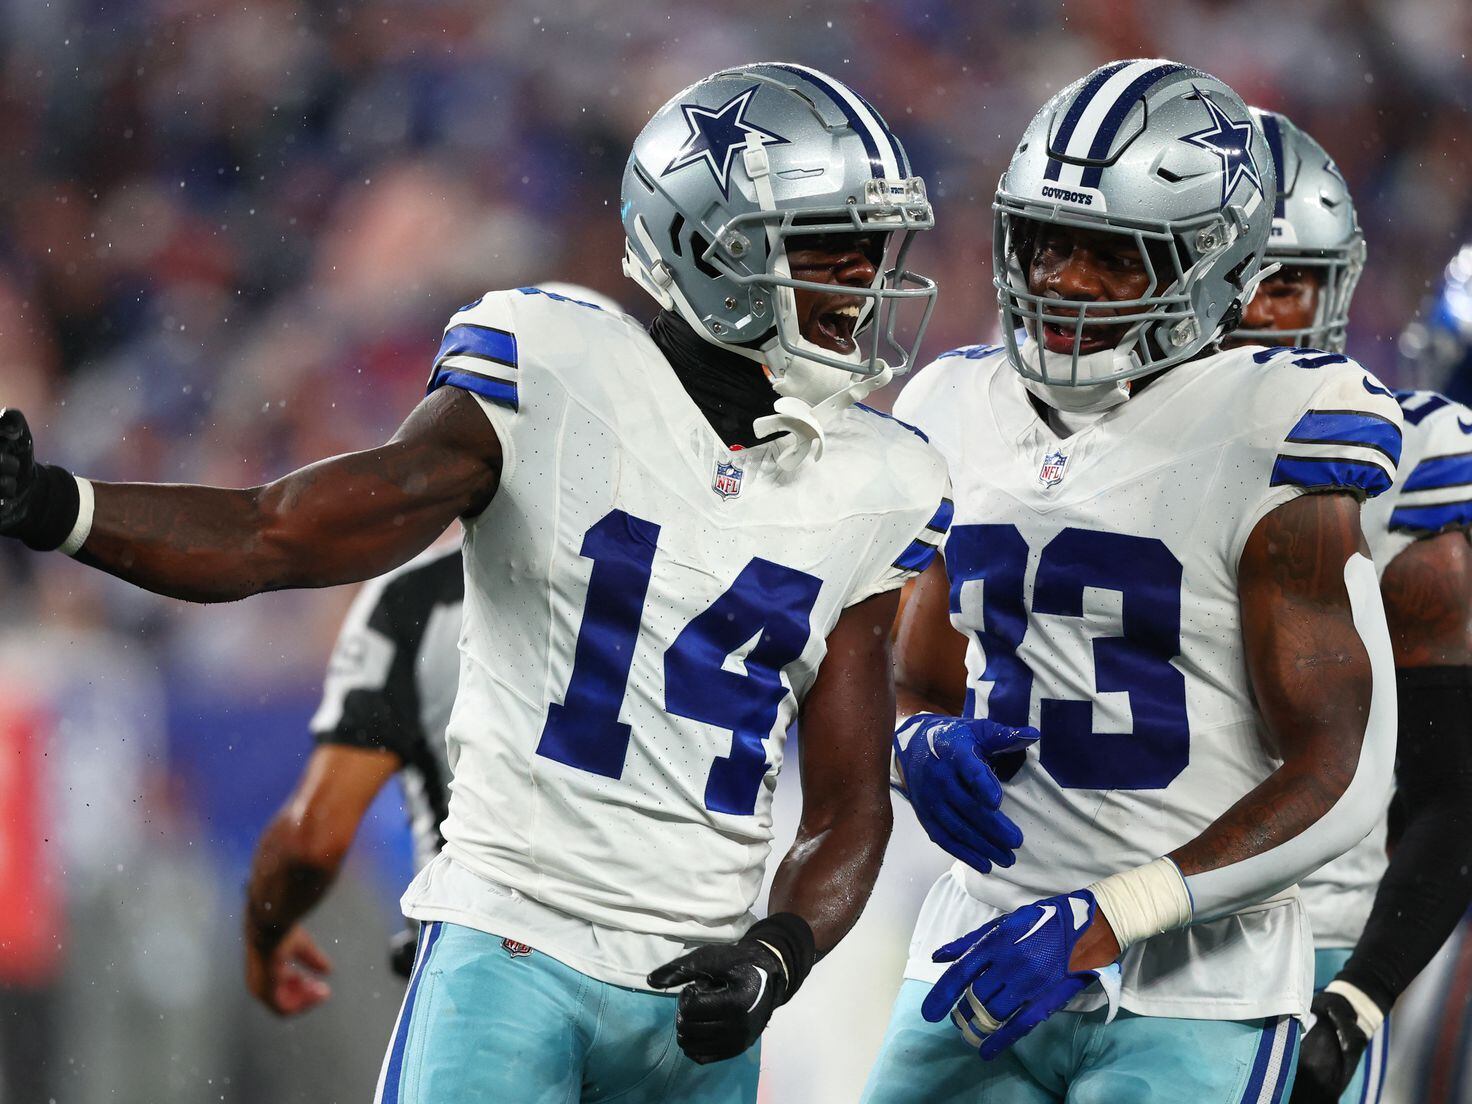 Cowboys Game Today: Cowboys vs Patriots injury report, spread